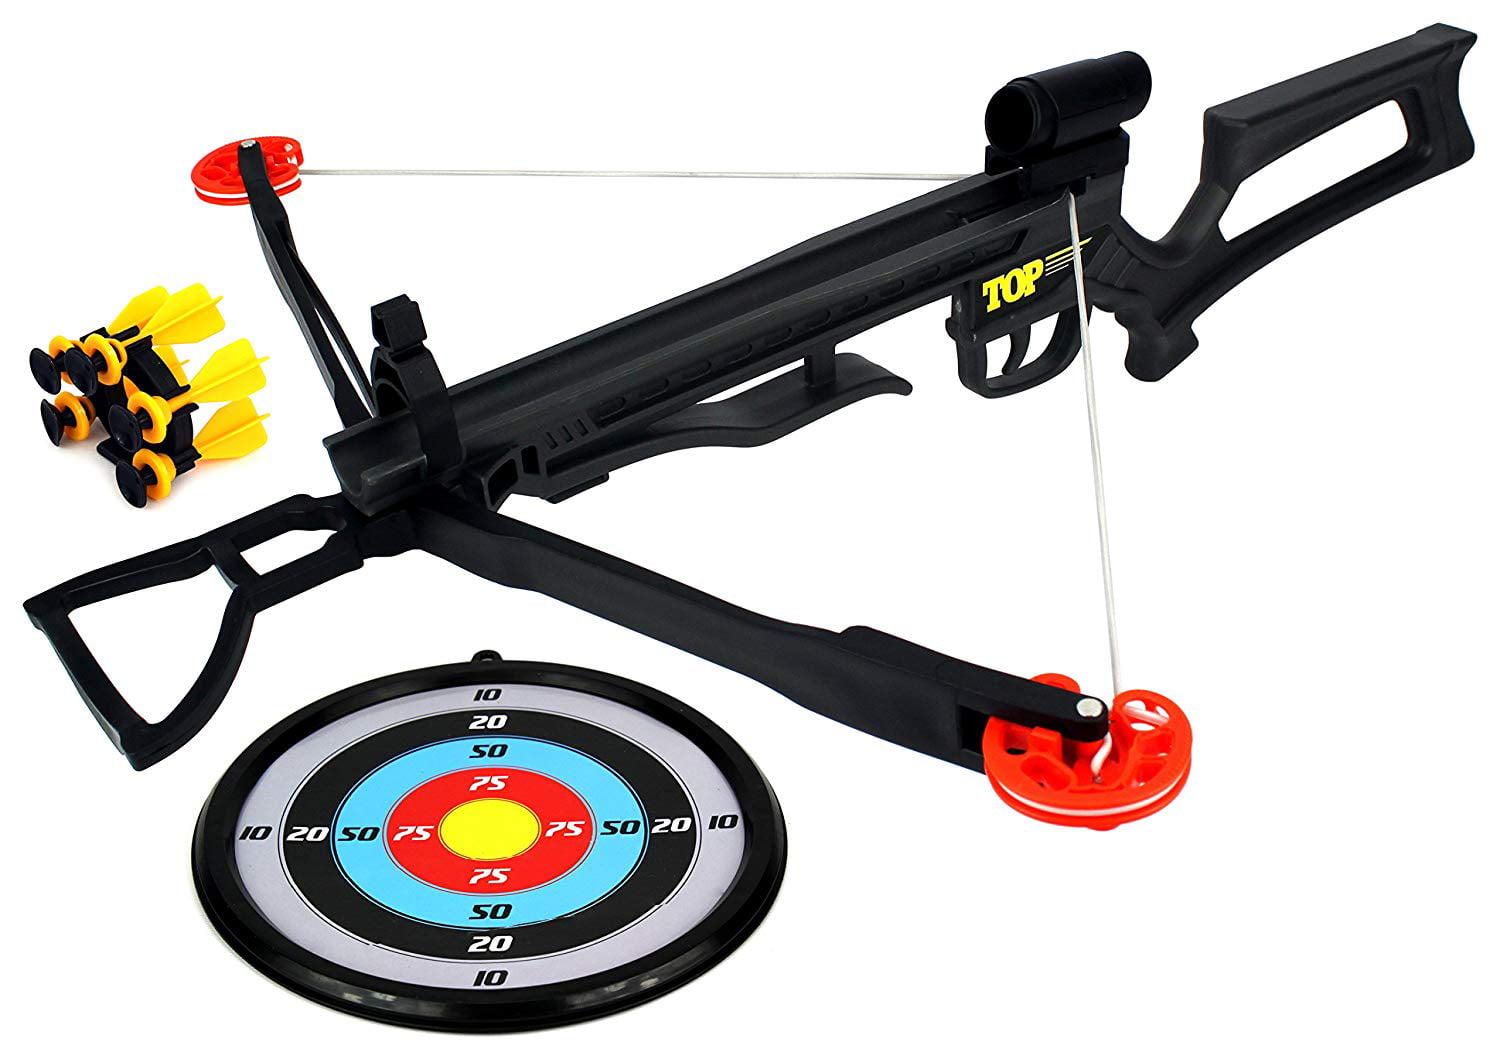 Unisex Sucker Darts Crossbow & Target Combo Gun Set Archery Outdoor Game 